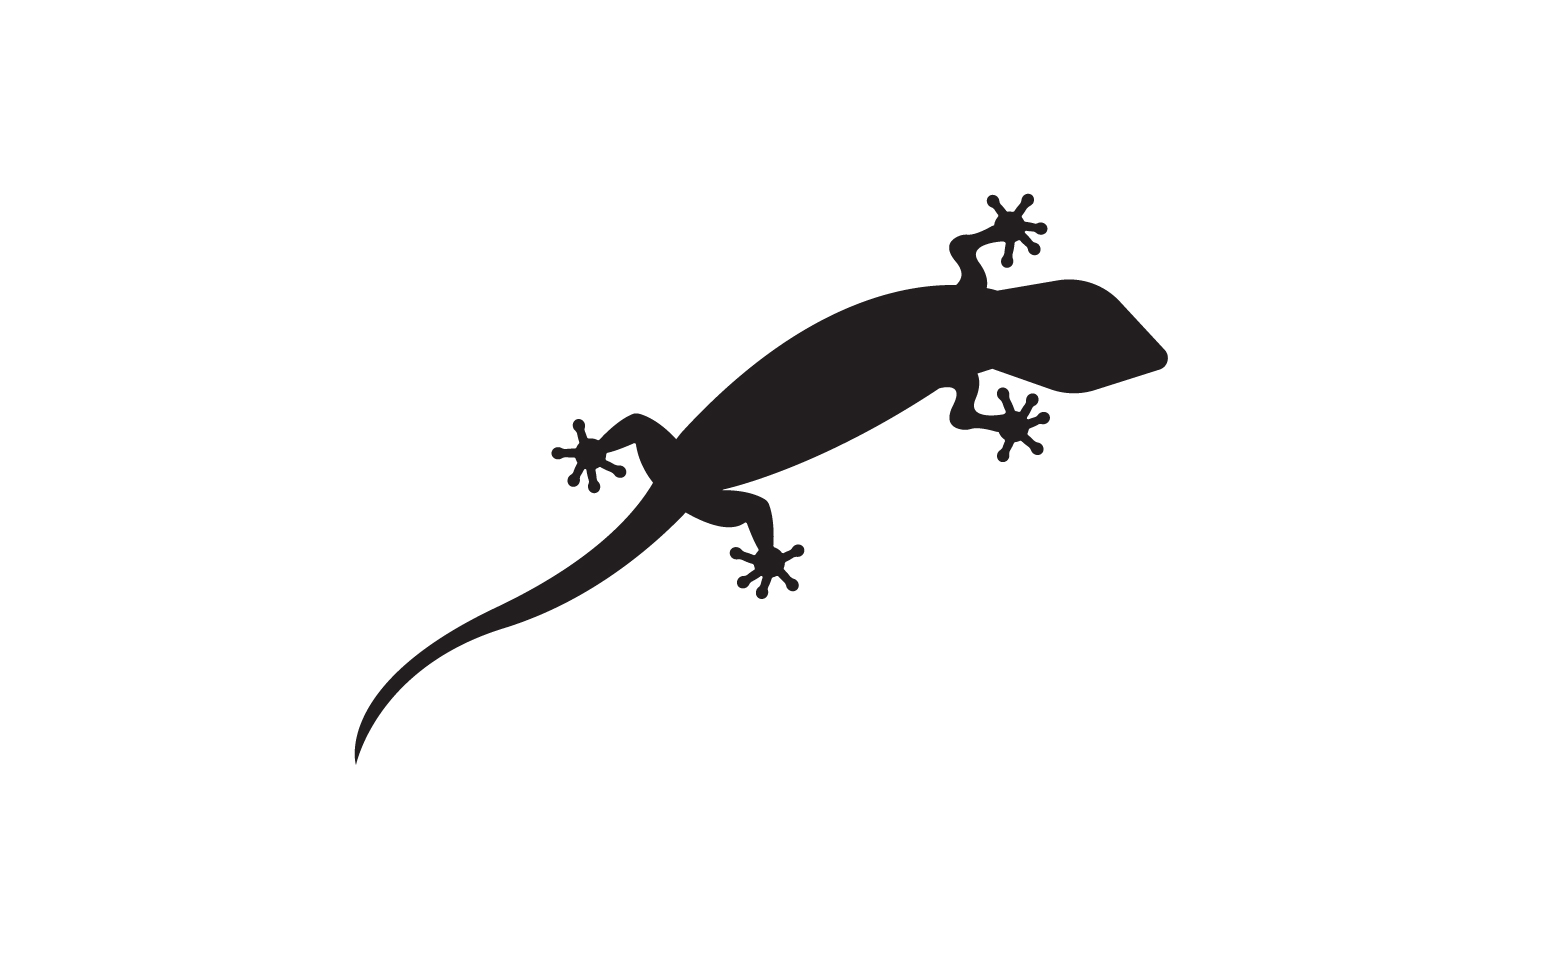 Lizard chameleon home lizard logo v36